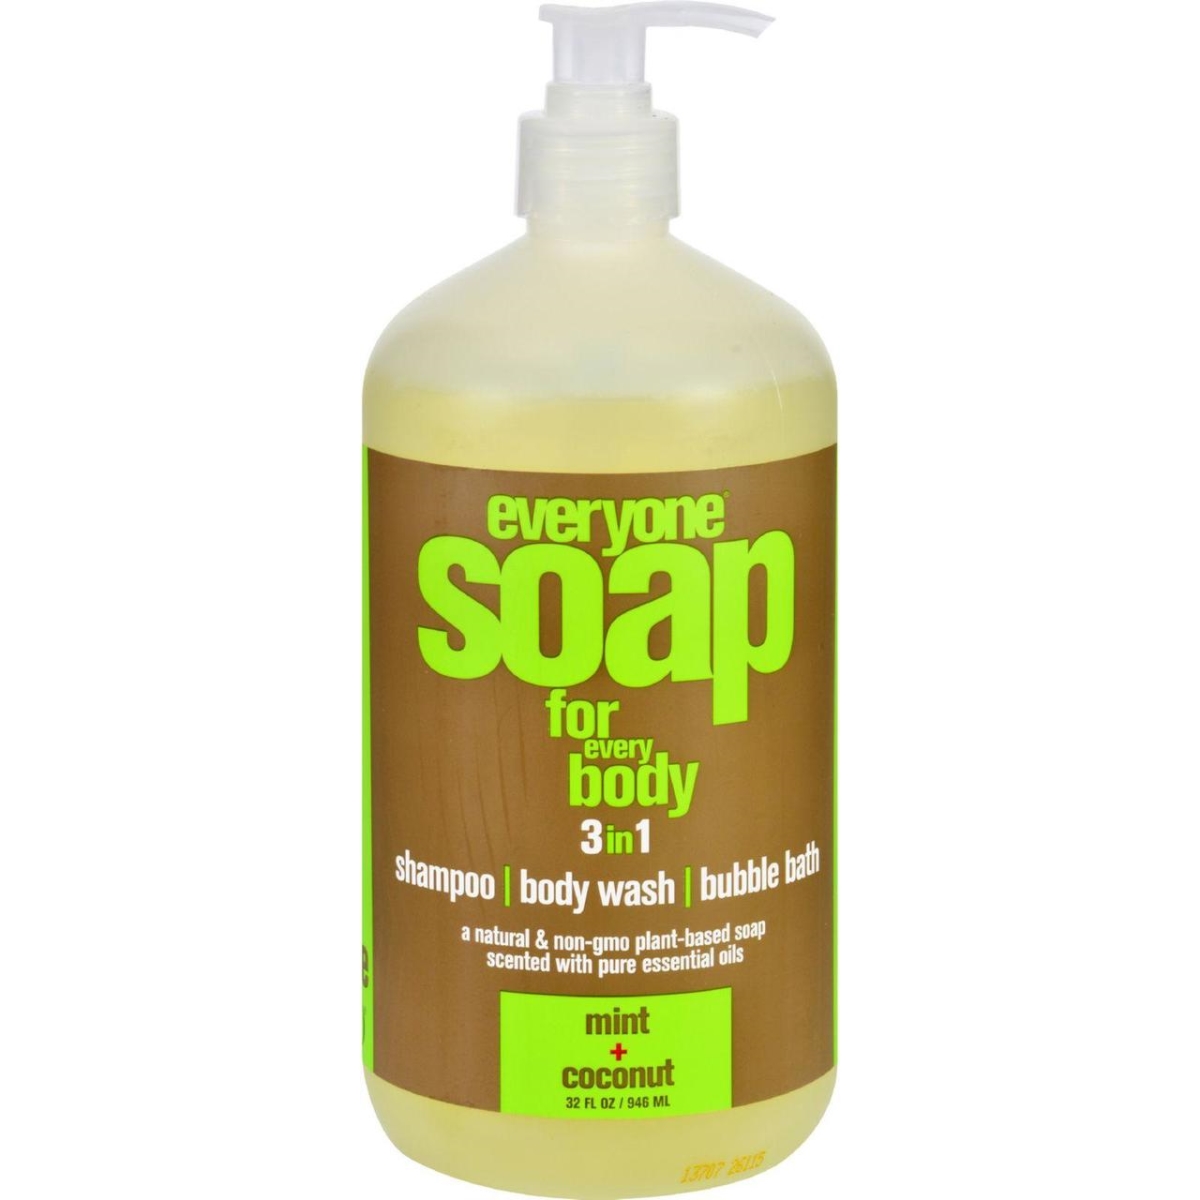 Hg1713973 32 Oz Natural Hand Liquid Soap For Everyone, Mint & Coconut